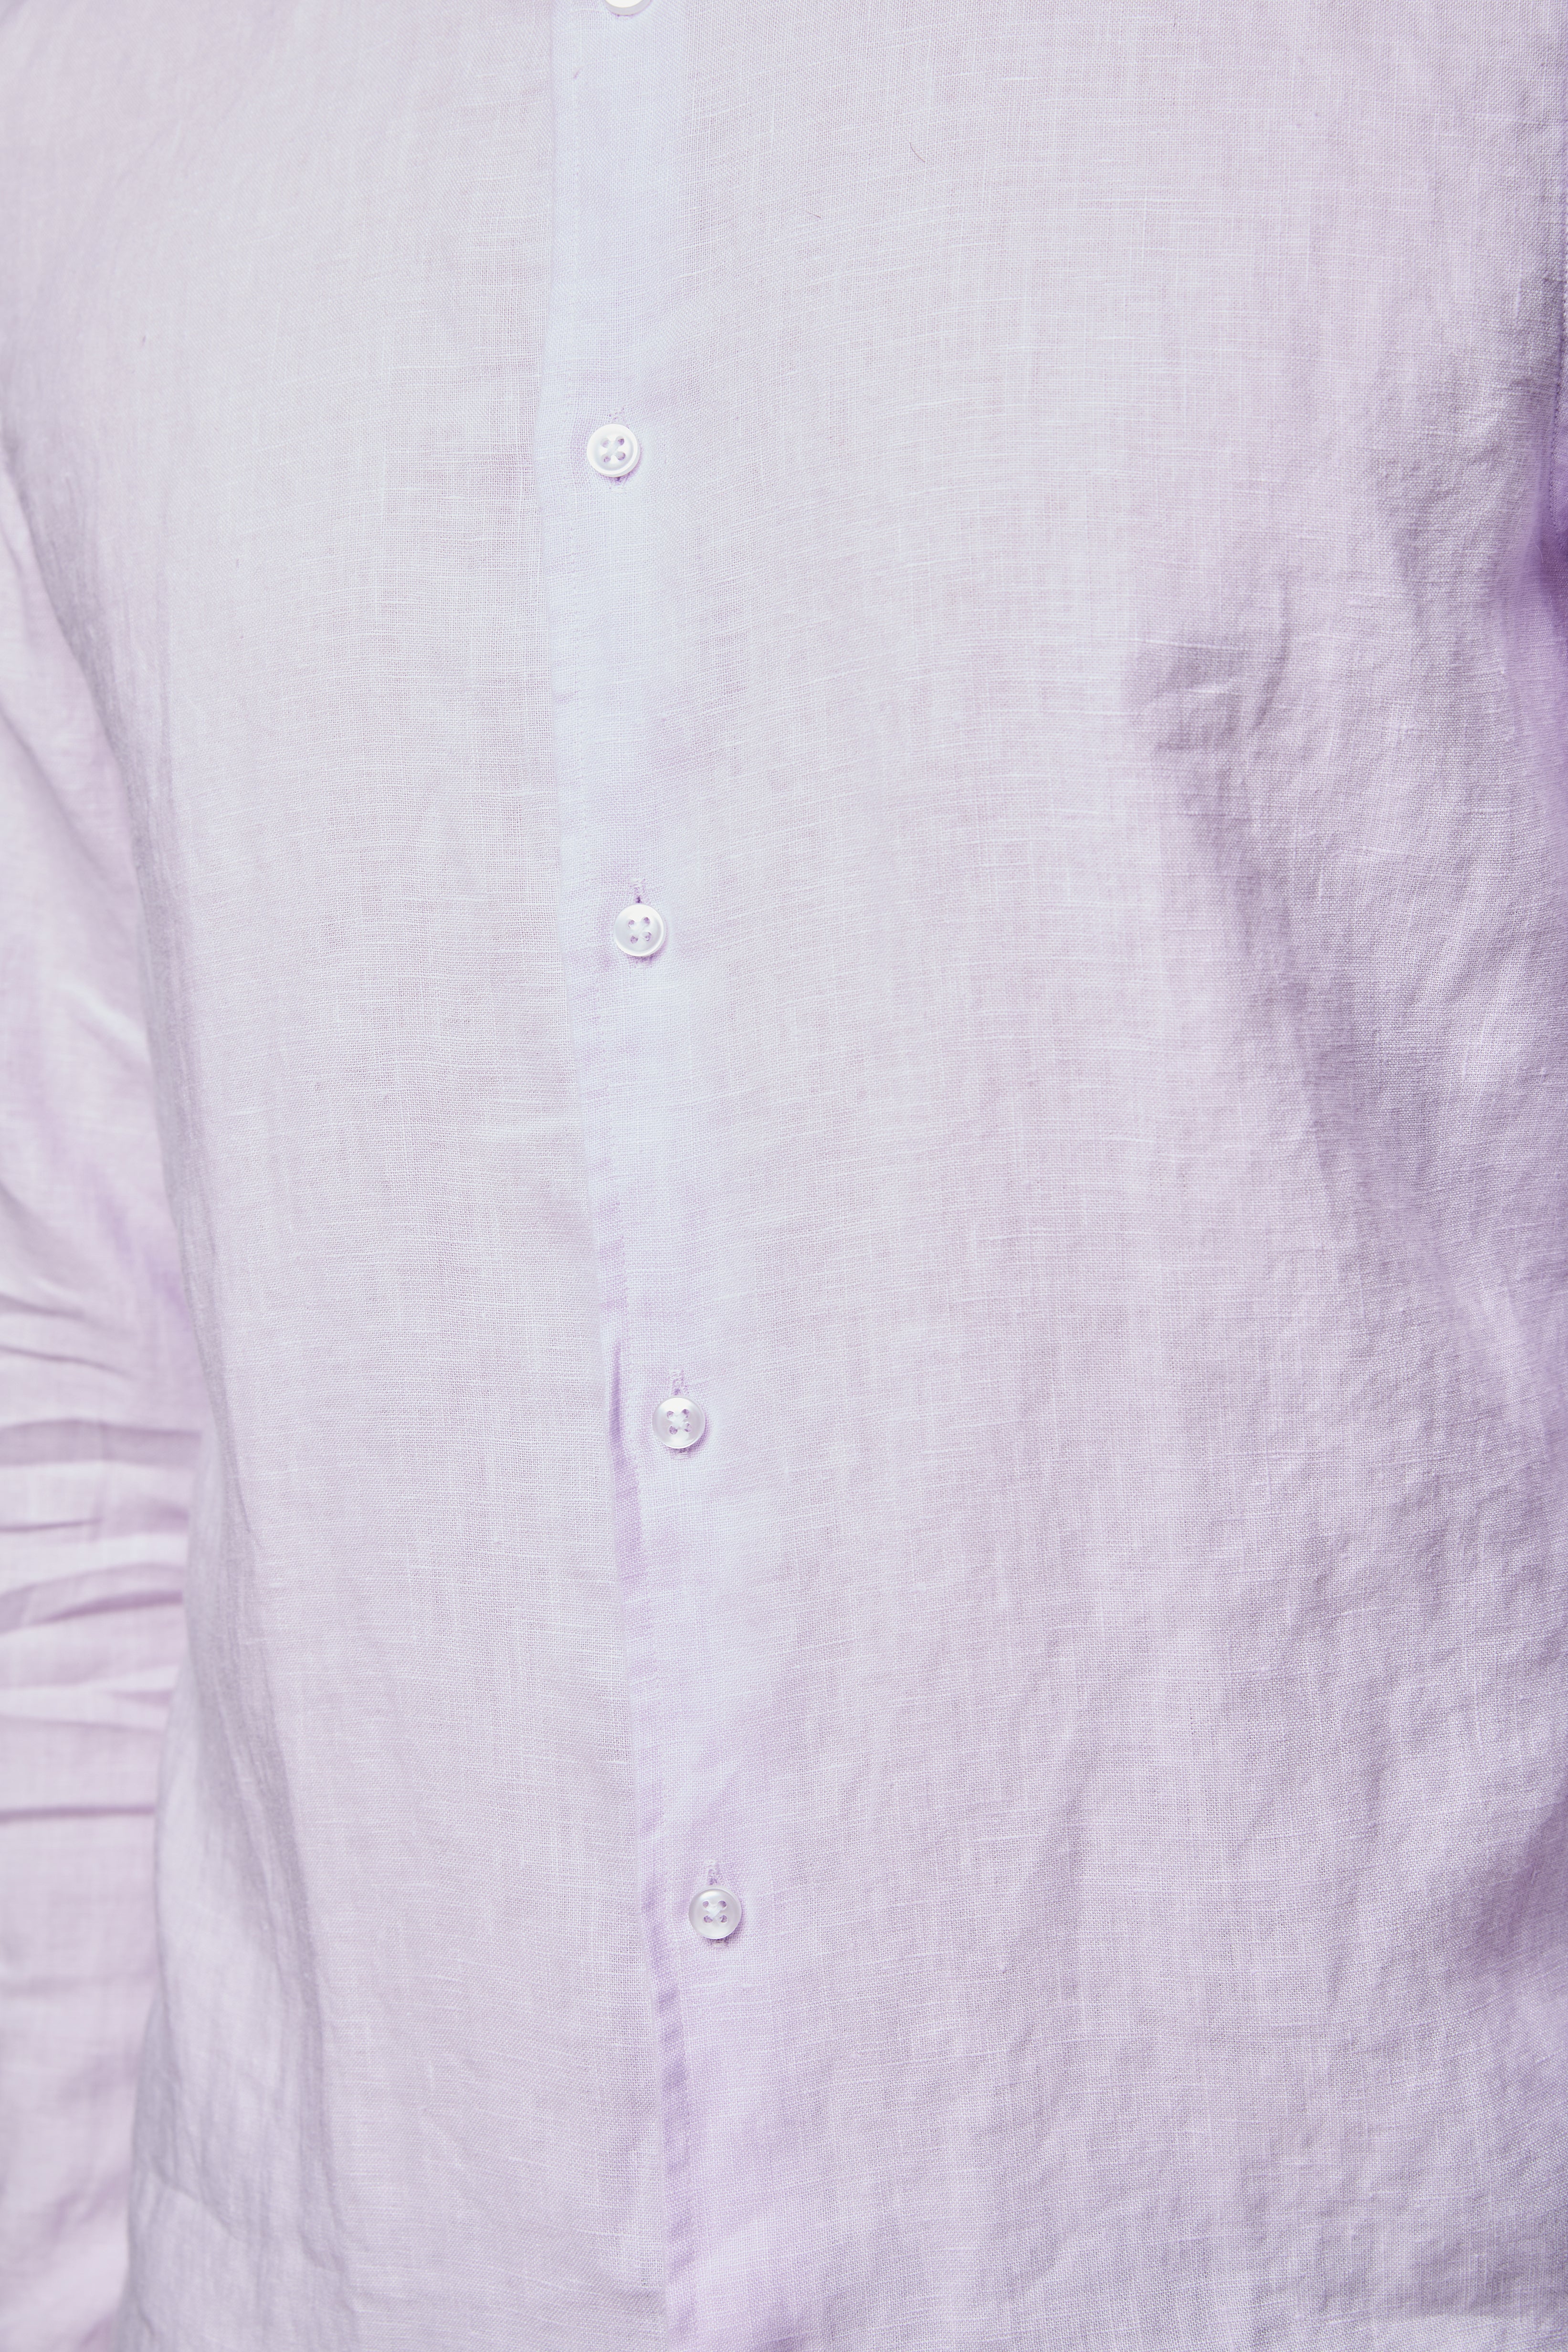 Jidu Linen Shirt - Pink Lavender